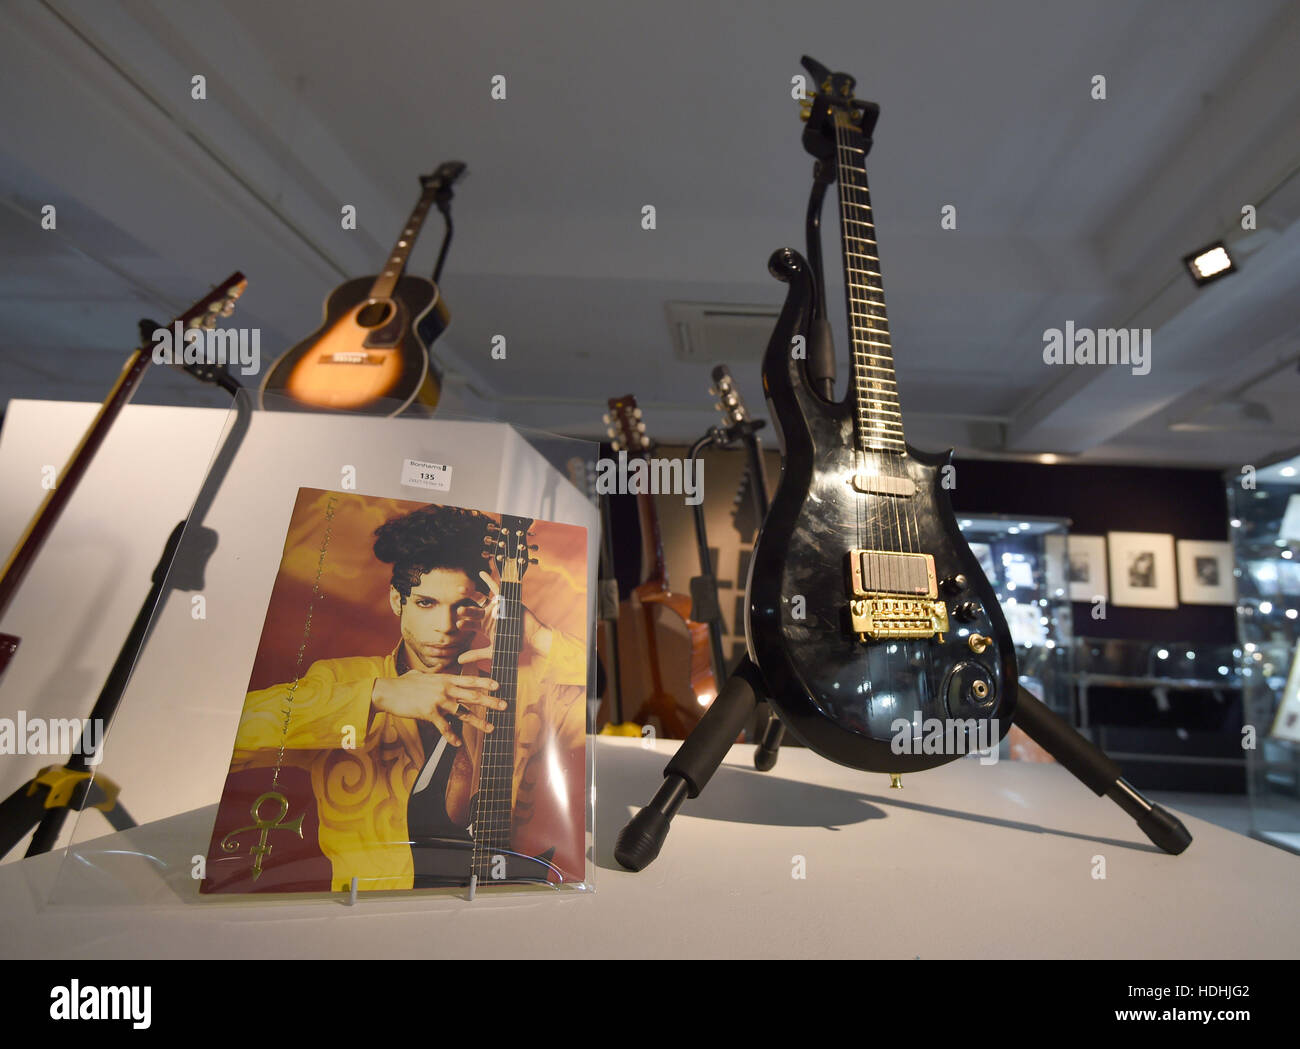 Une guitare du Prince (avant droit) et une guitare administré par Jimi Hendrix (arrière gauche) sur l'affichage de l'avant de l'animation de la Vente Bonhams à souvenirs à Knightsbridge, Londres plus tard cette semaine. Banque D'Images